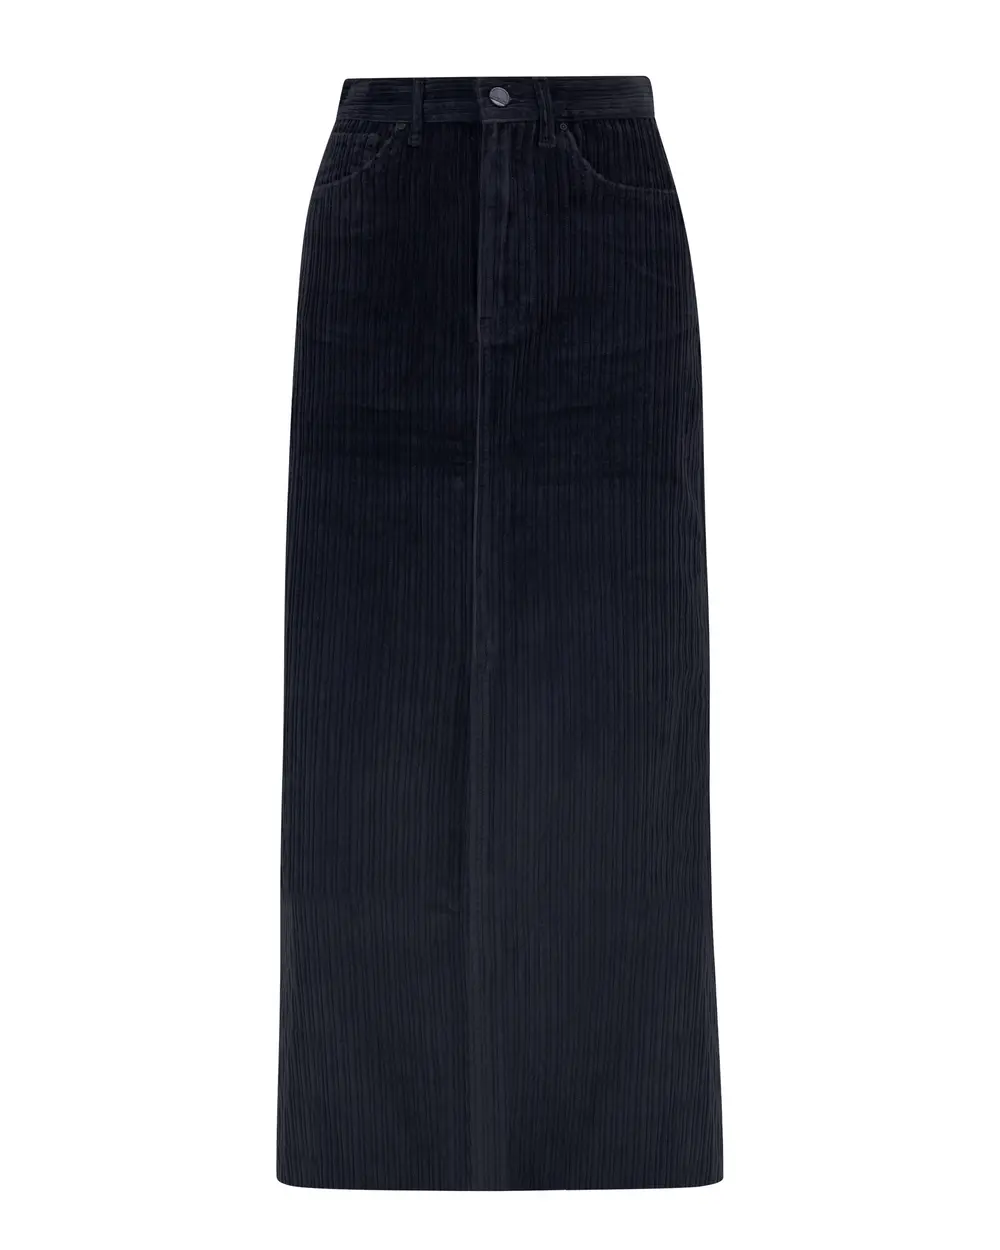 Velvet Skirt with Front Slit and Pockets